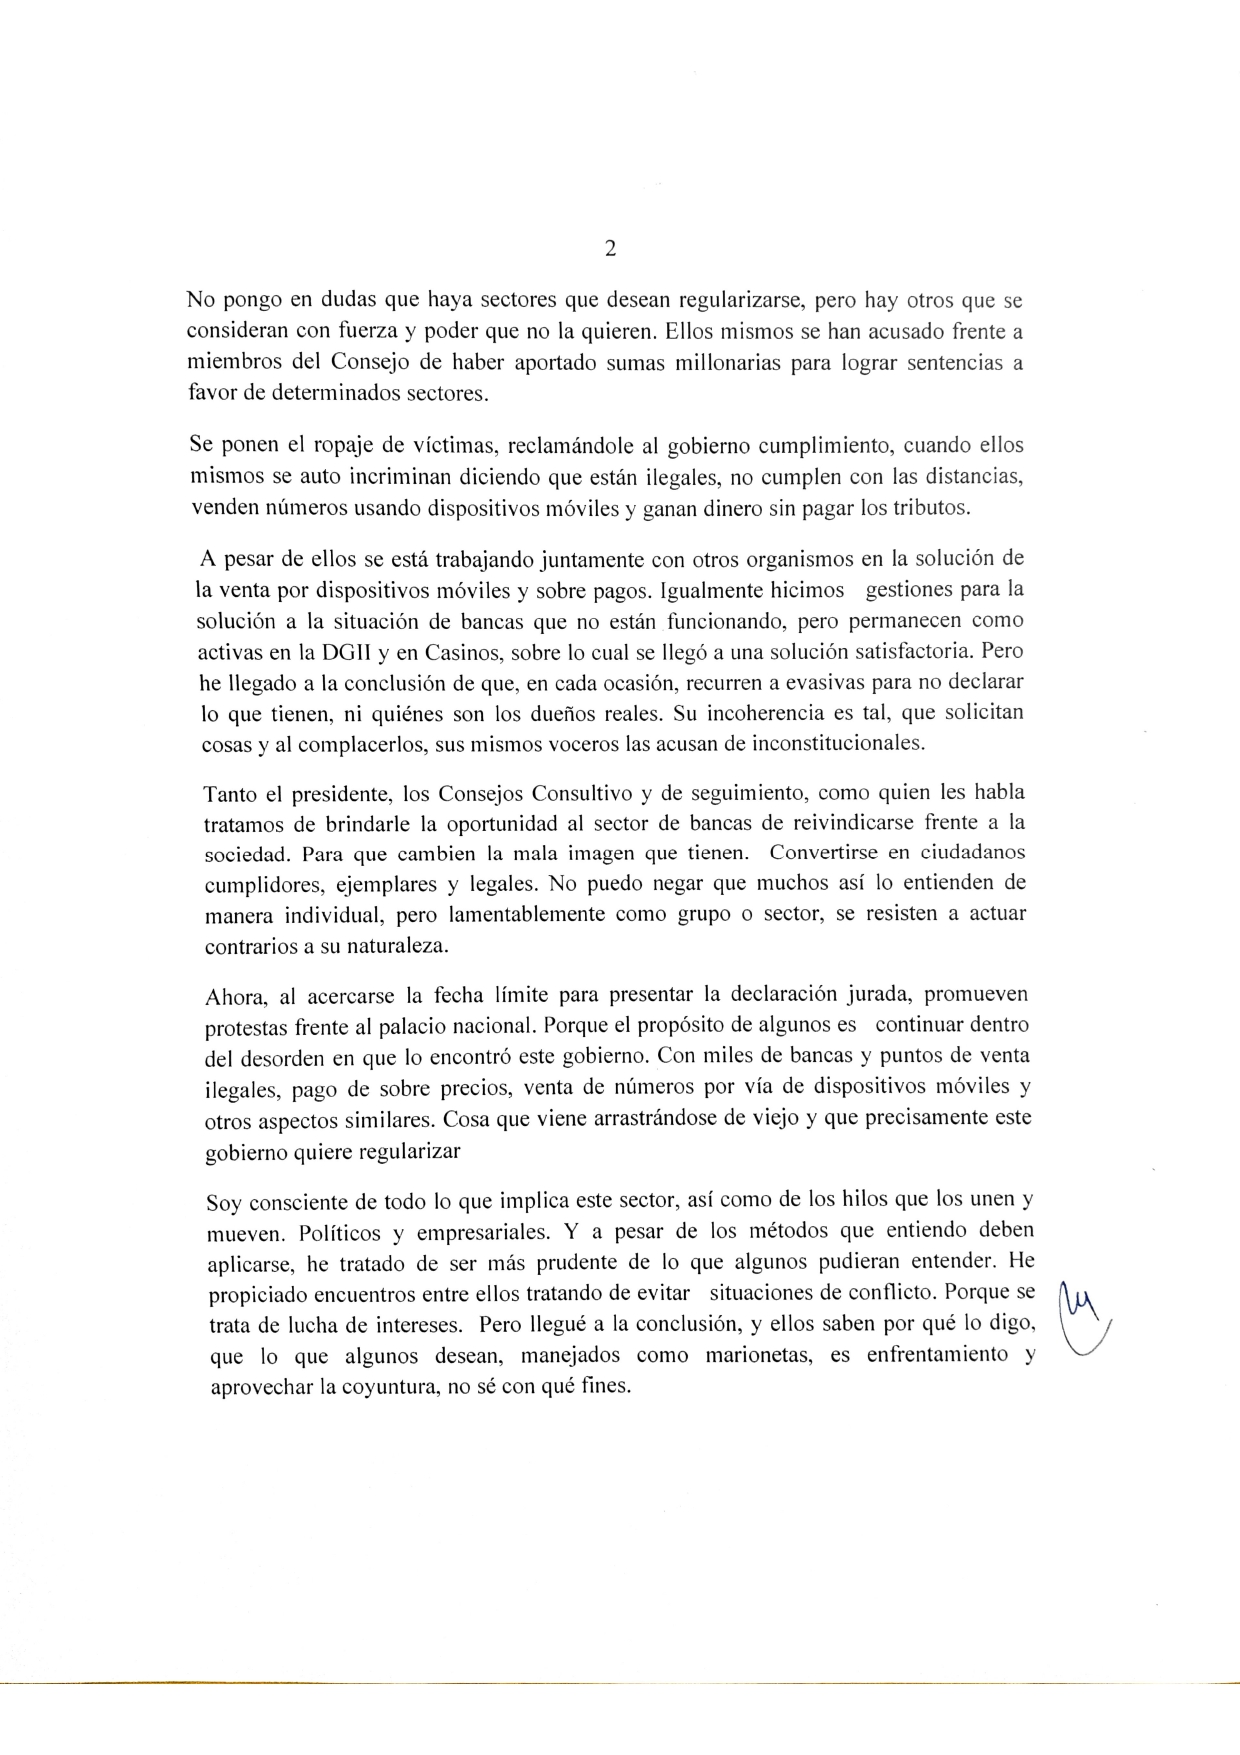 Declaraciones_de_Quico_Tabar_ante_la_posicin_del_los_banqueros_page-0002.jpg